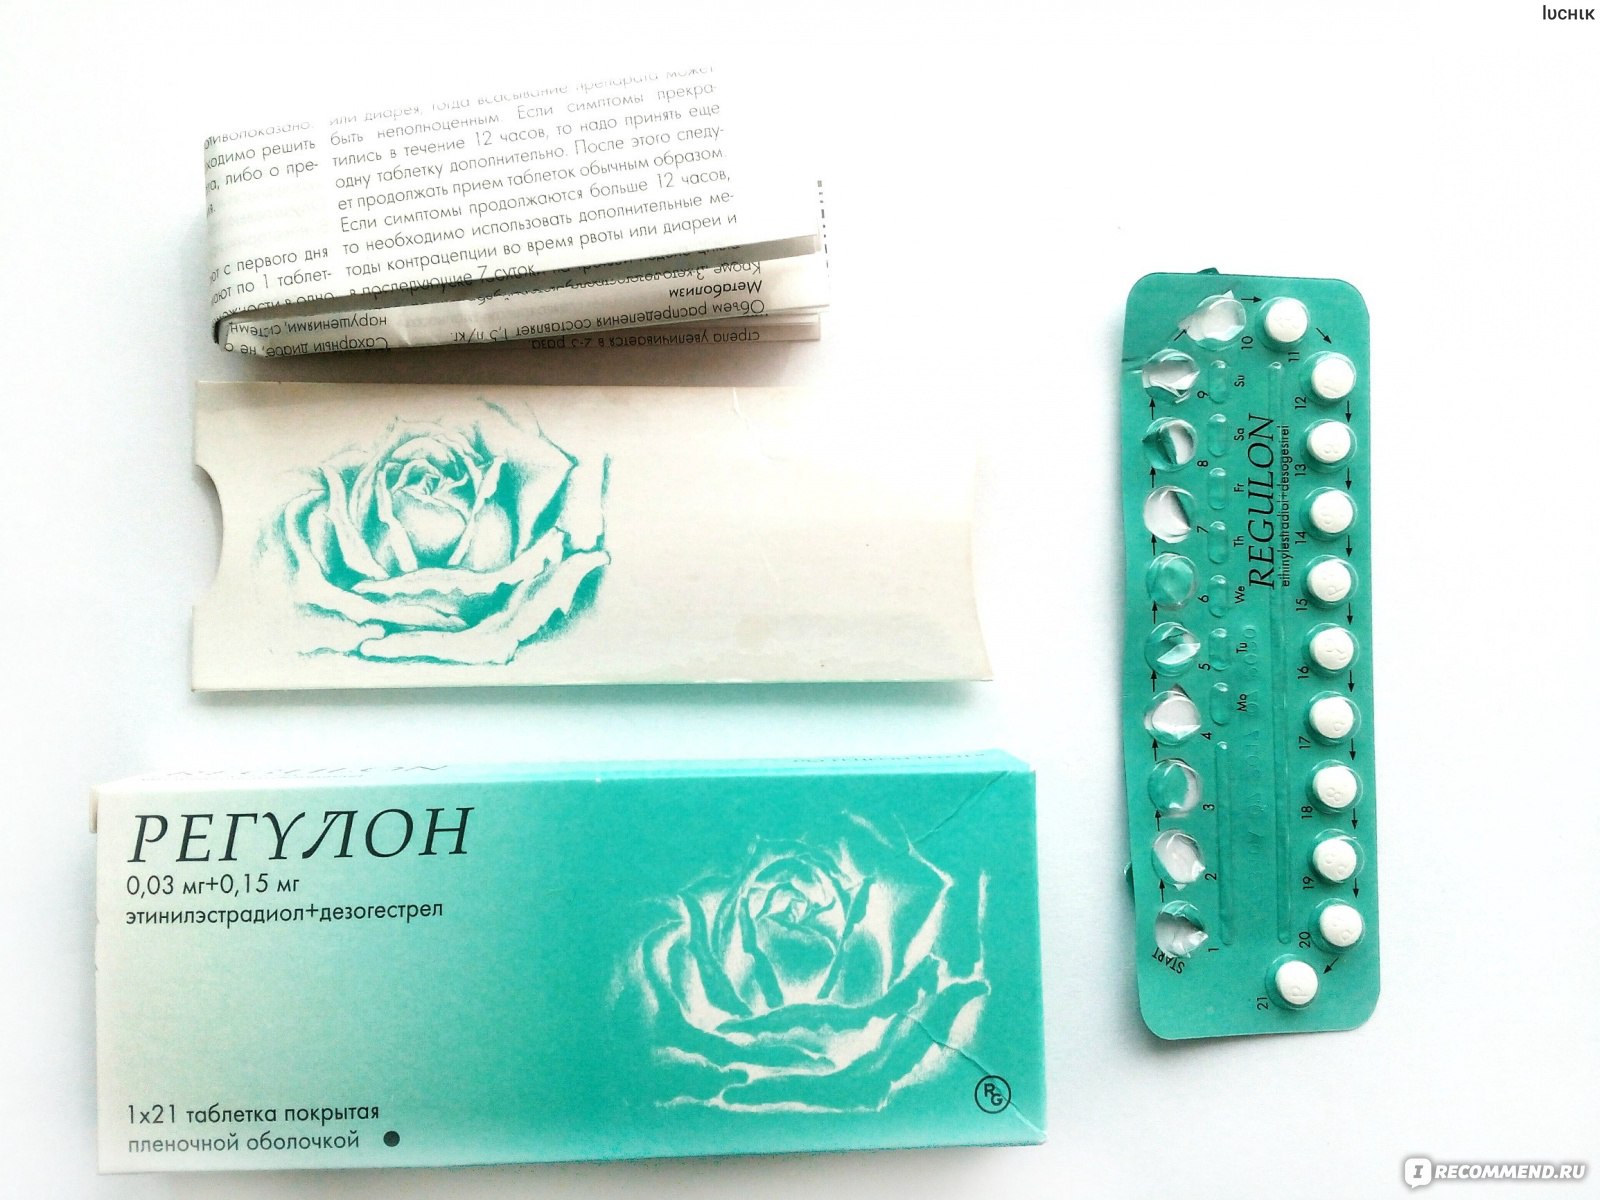 Сильные противозачаточные таблетки